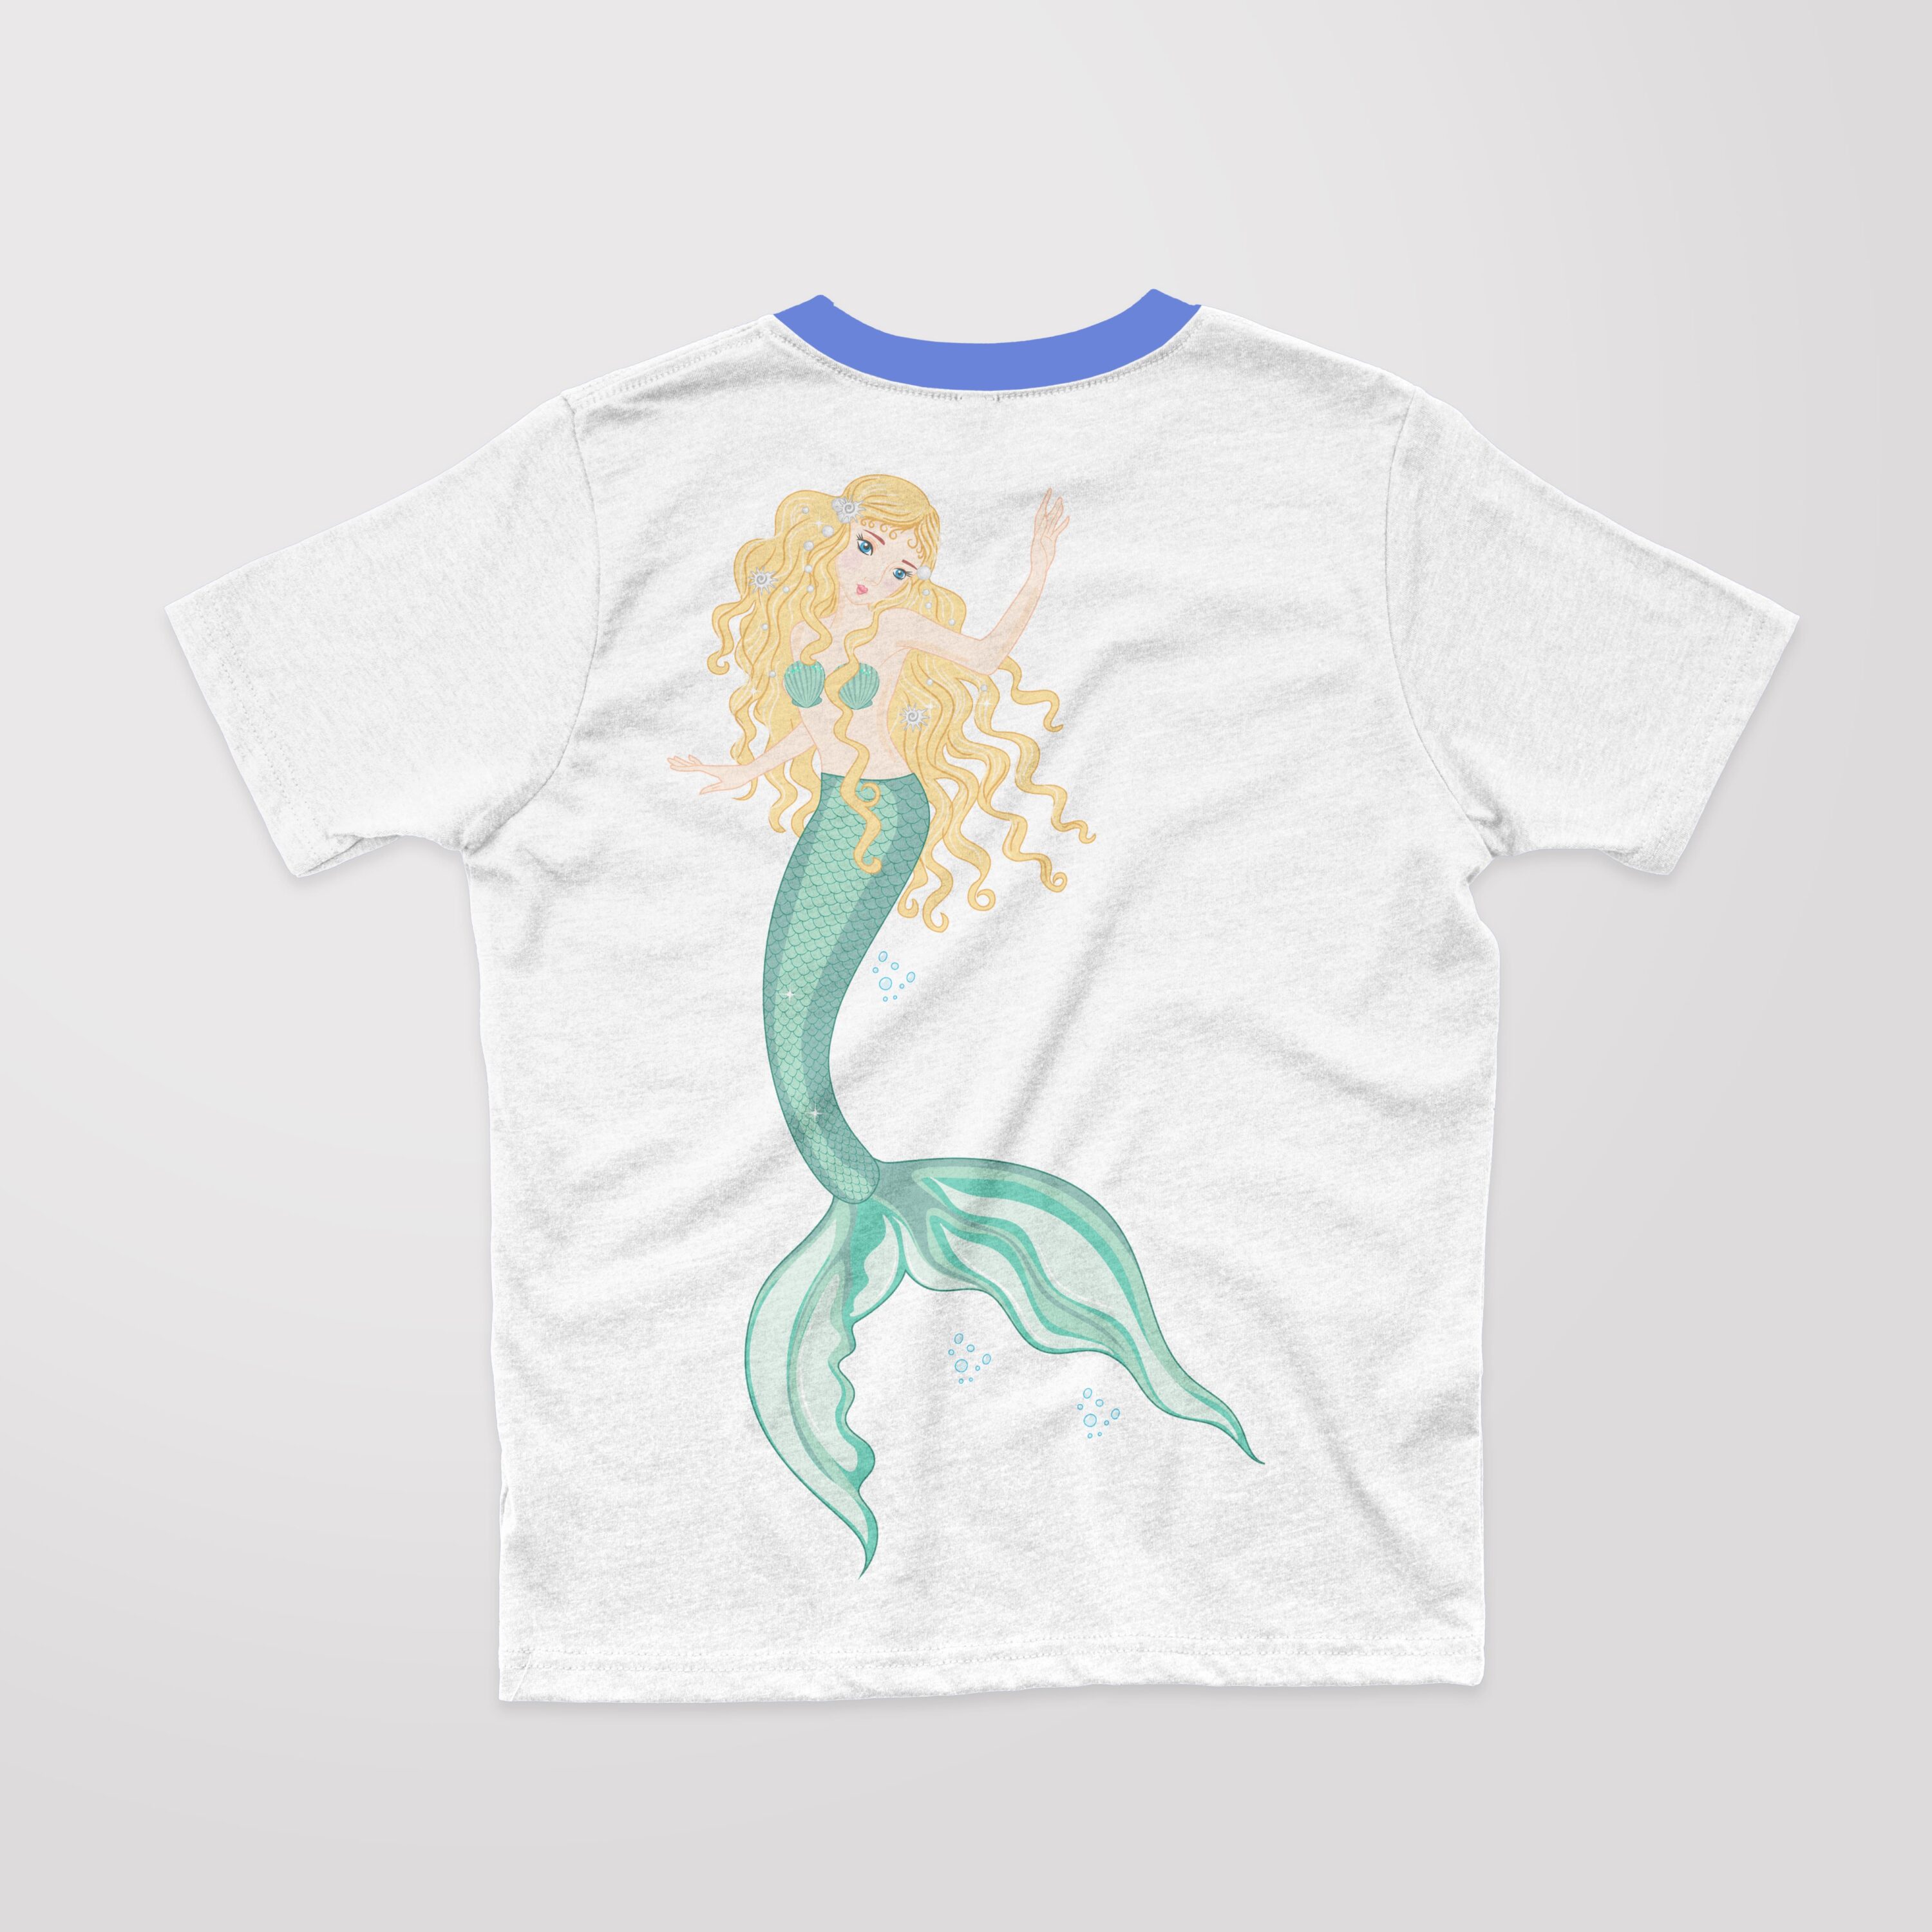 So cute blonde little mermaid.